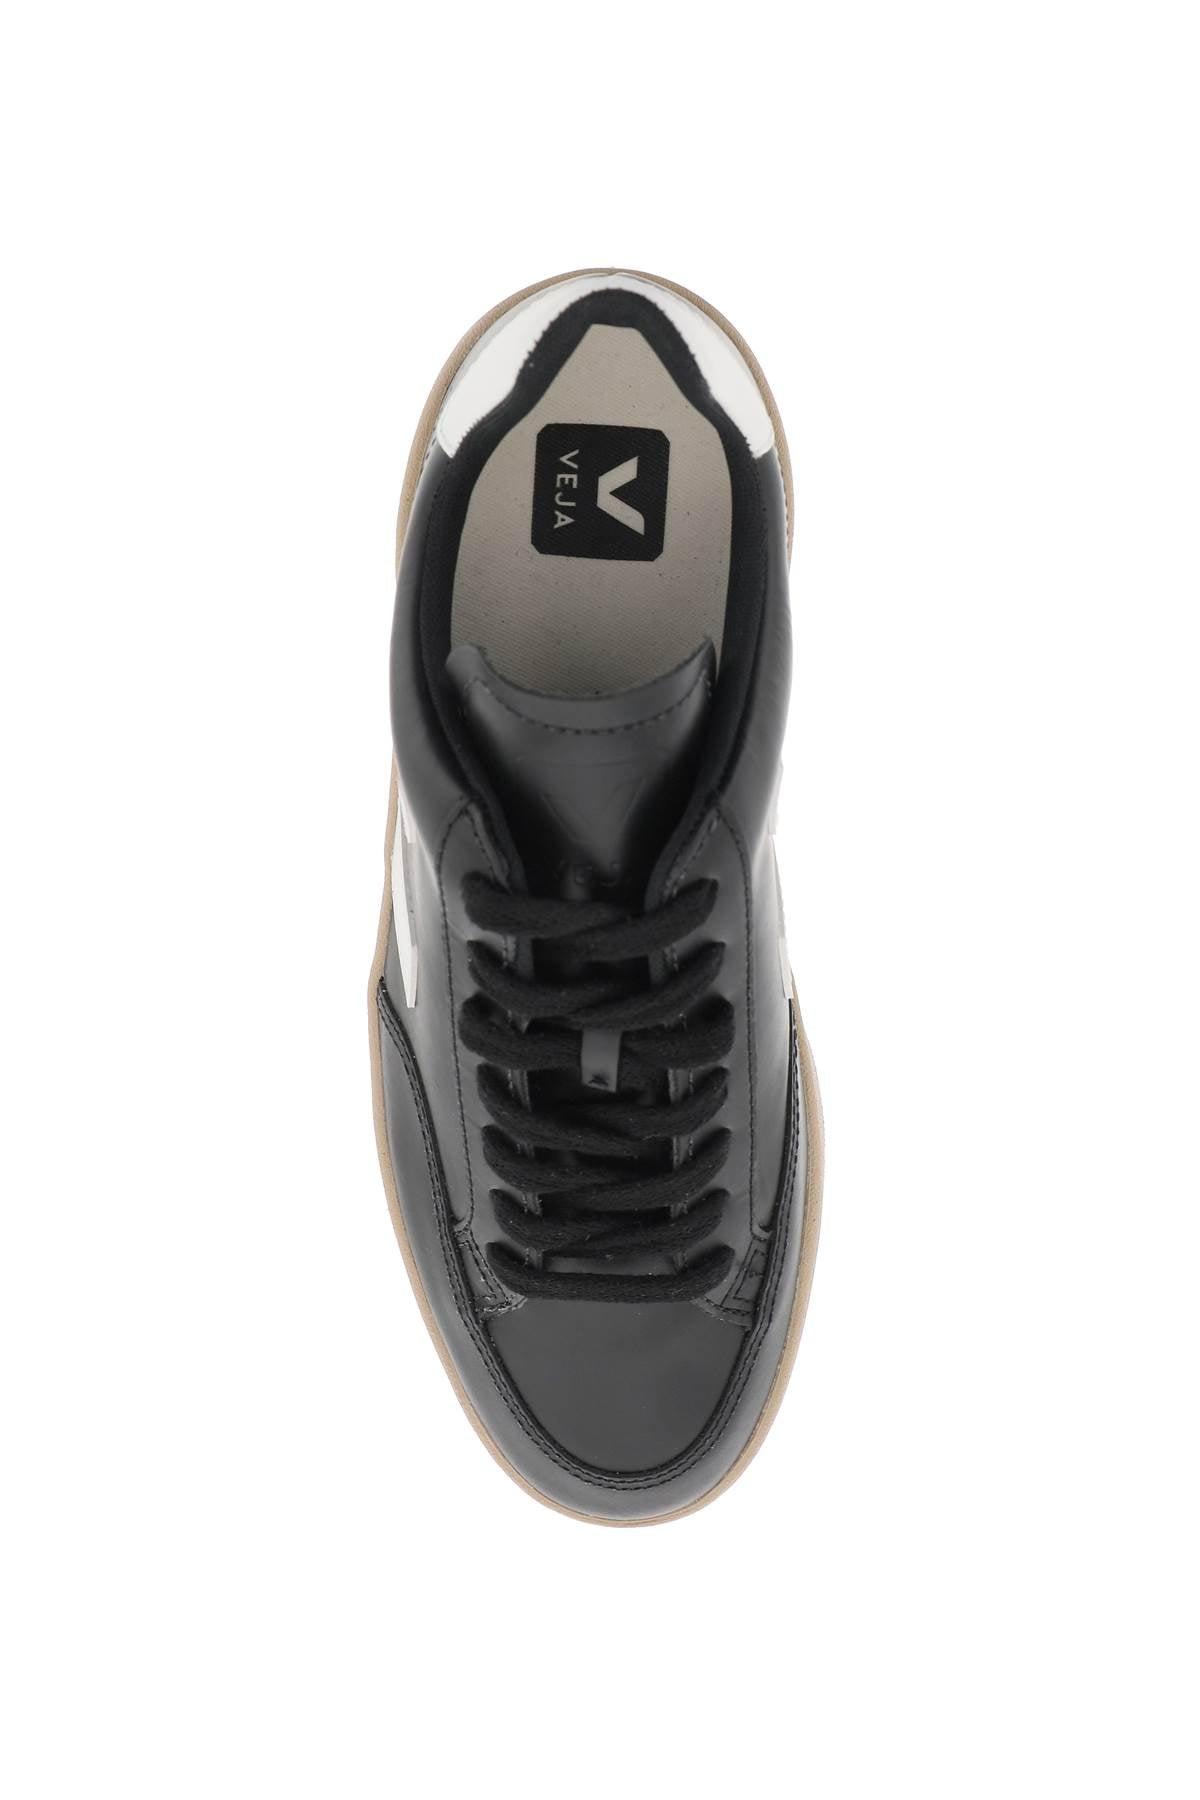 Veja leather v-12 sneakers-1